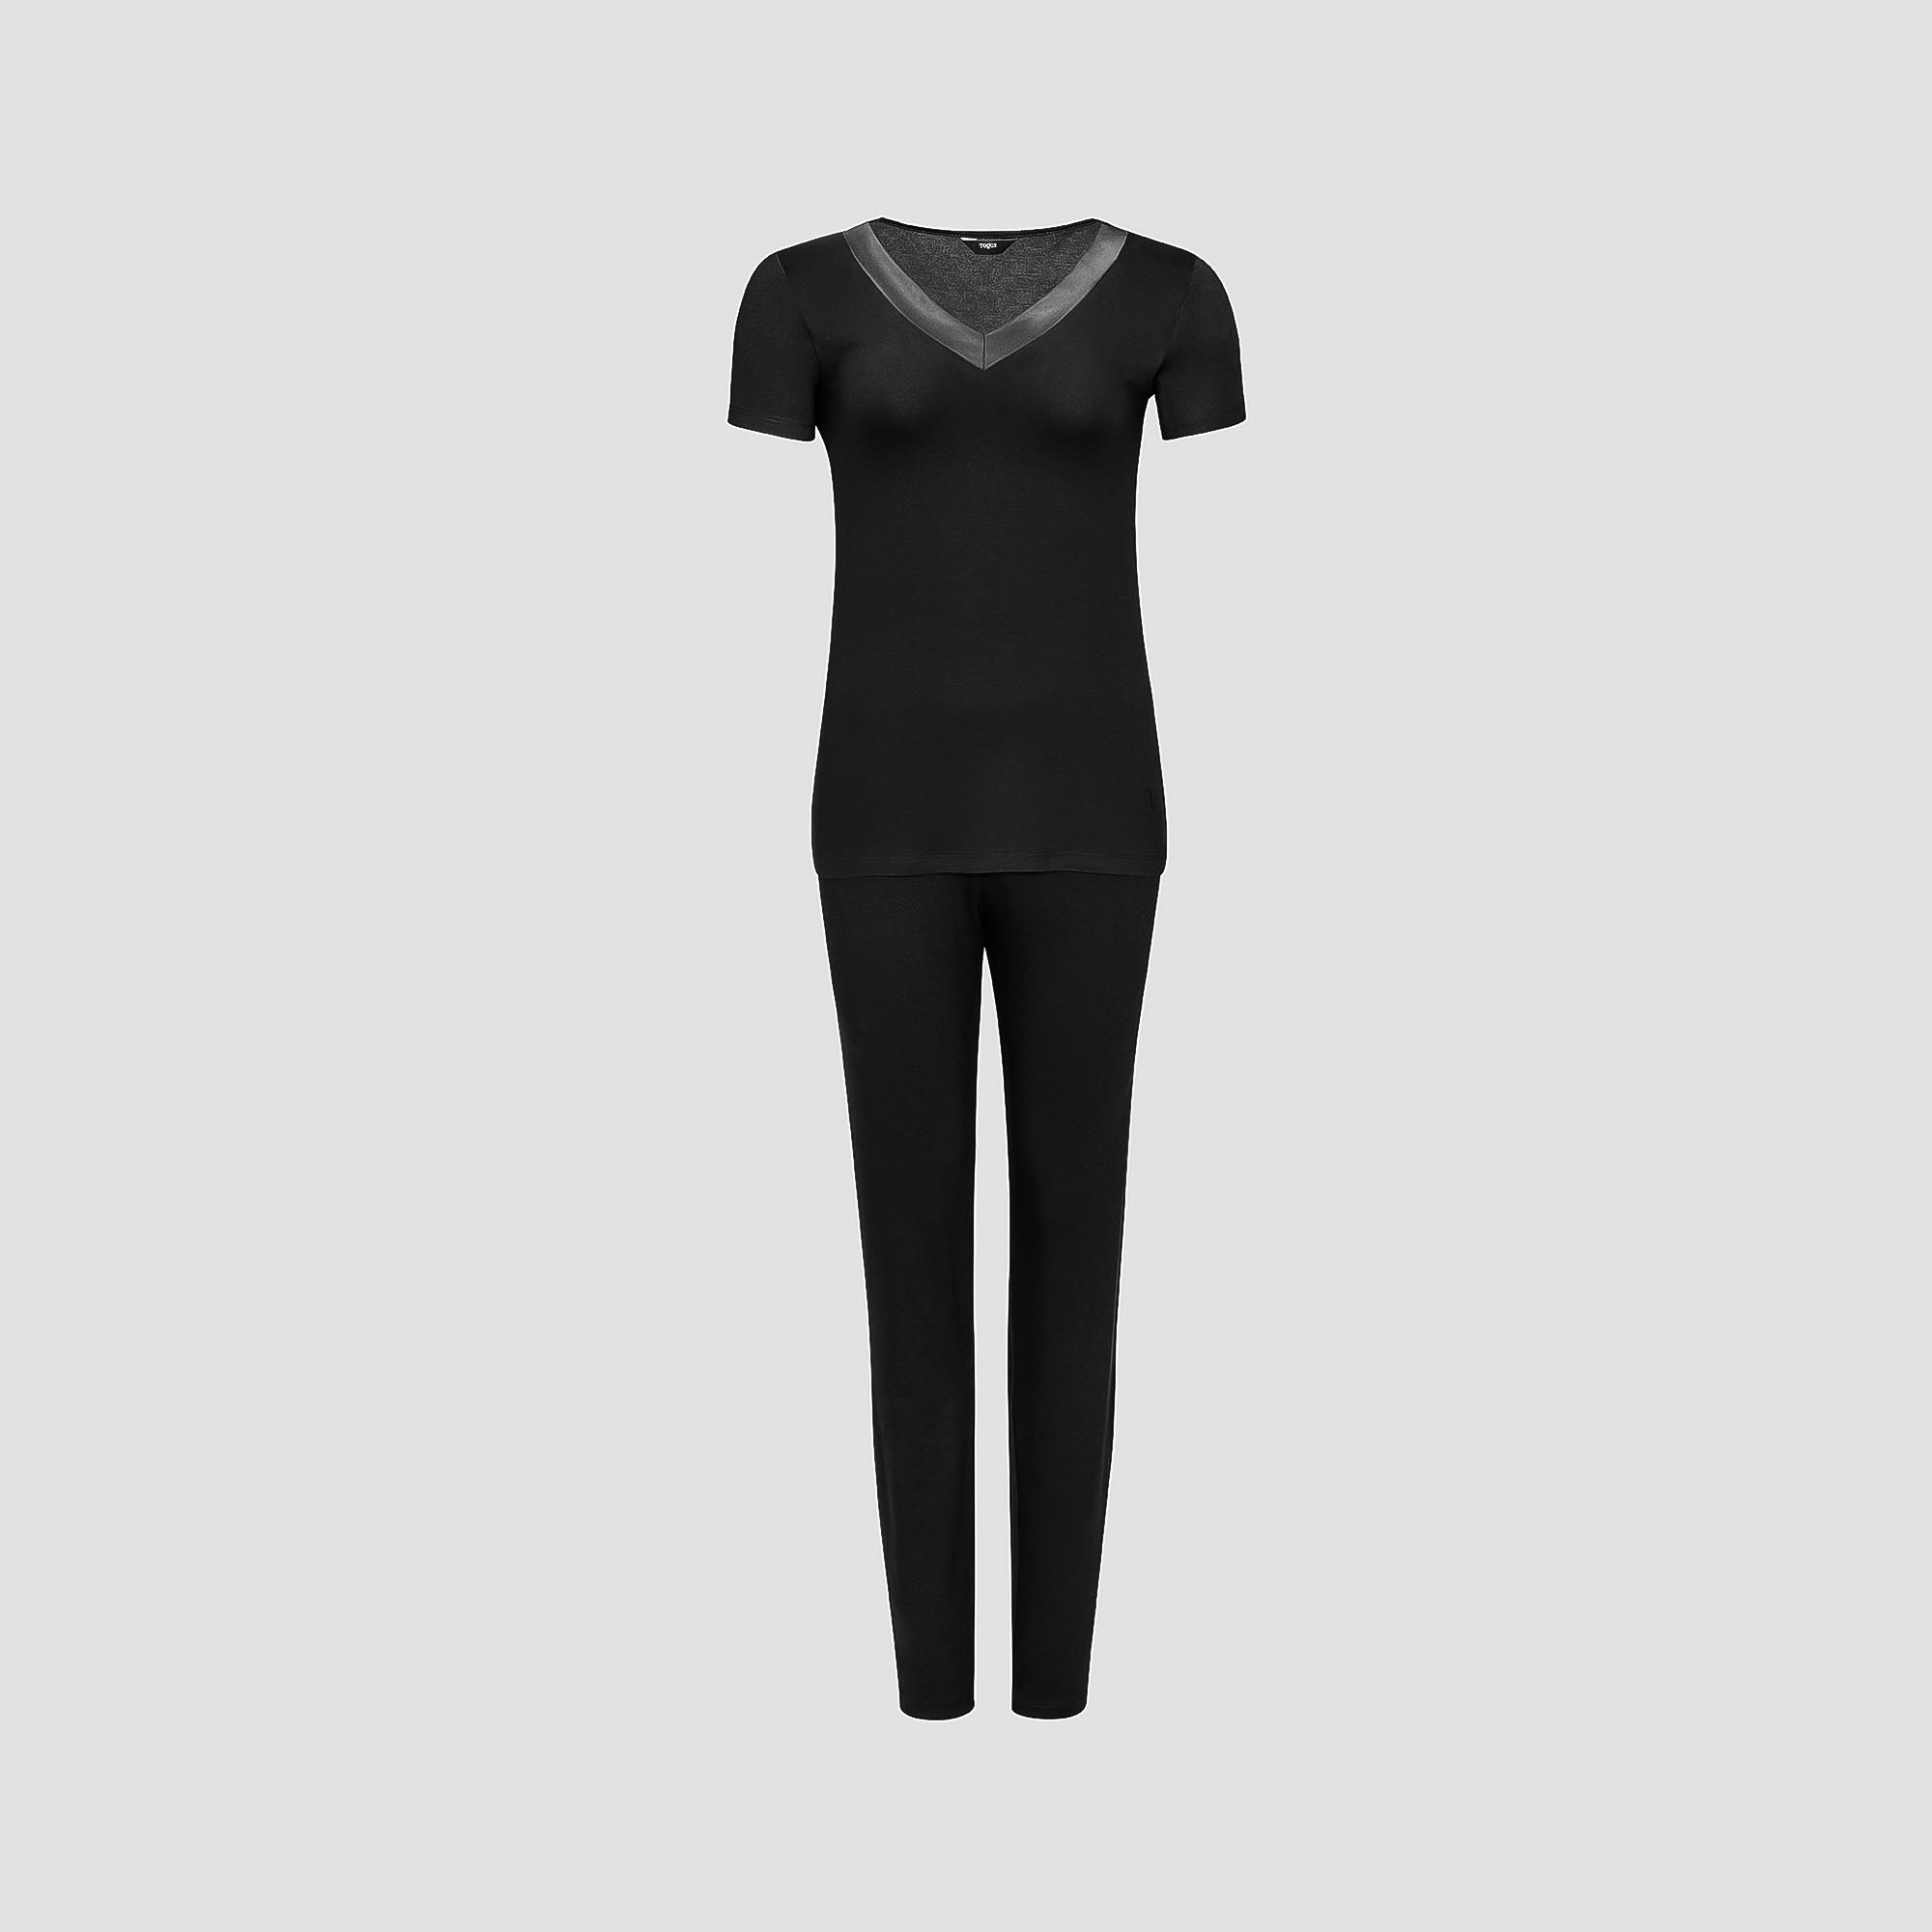 Пижама Togas Ингелла черная женская XL(50) 2 предмета пижама футболка